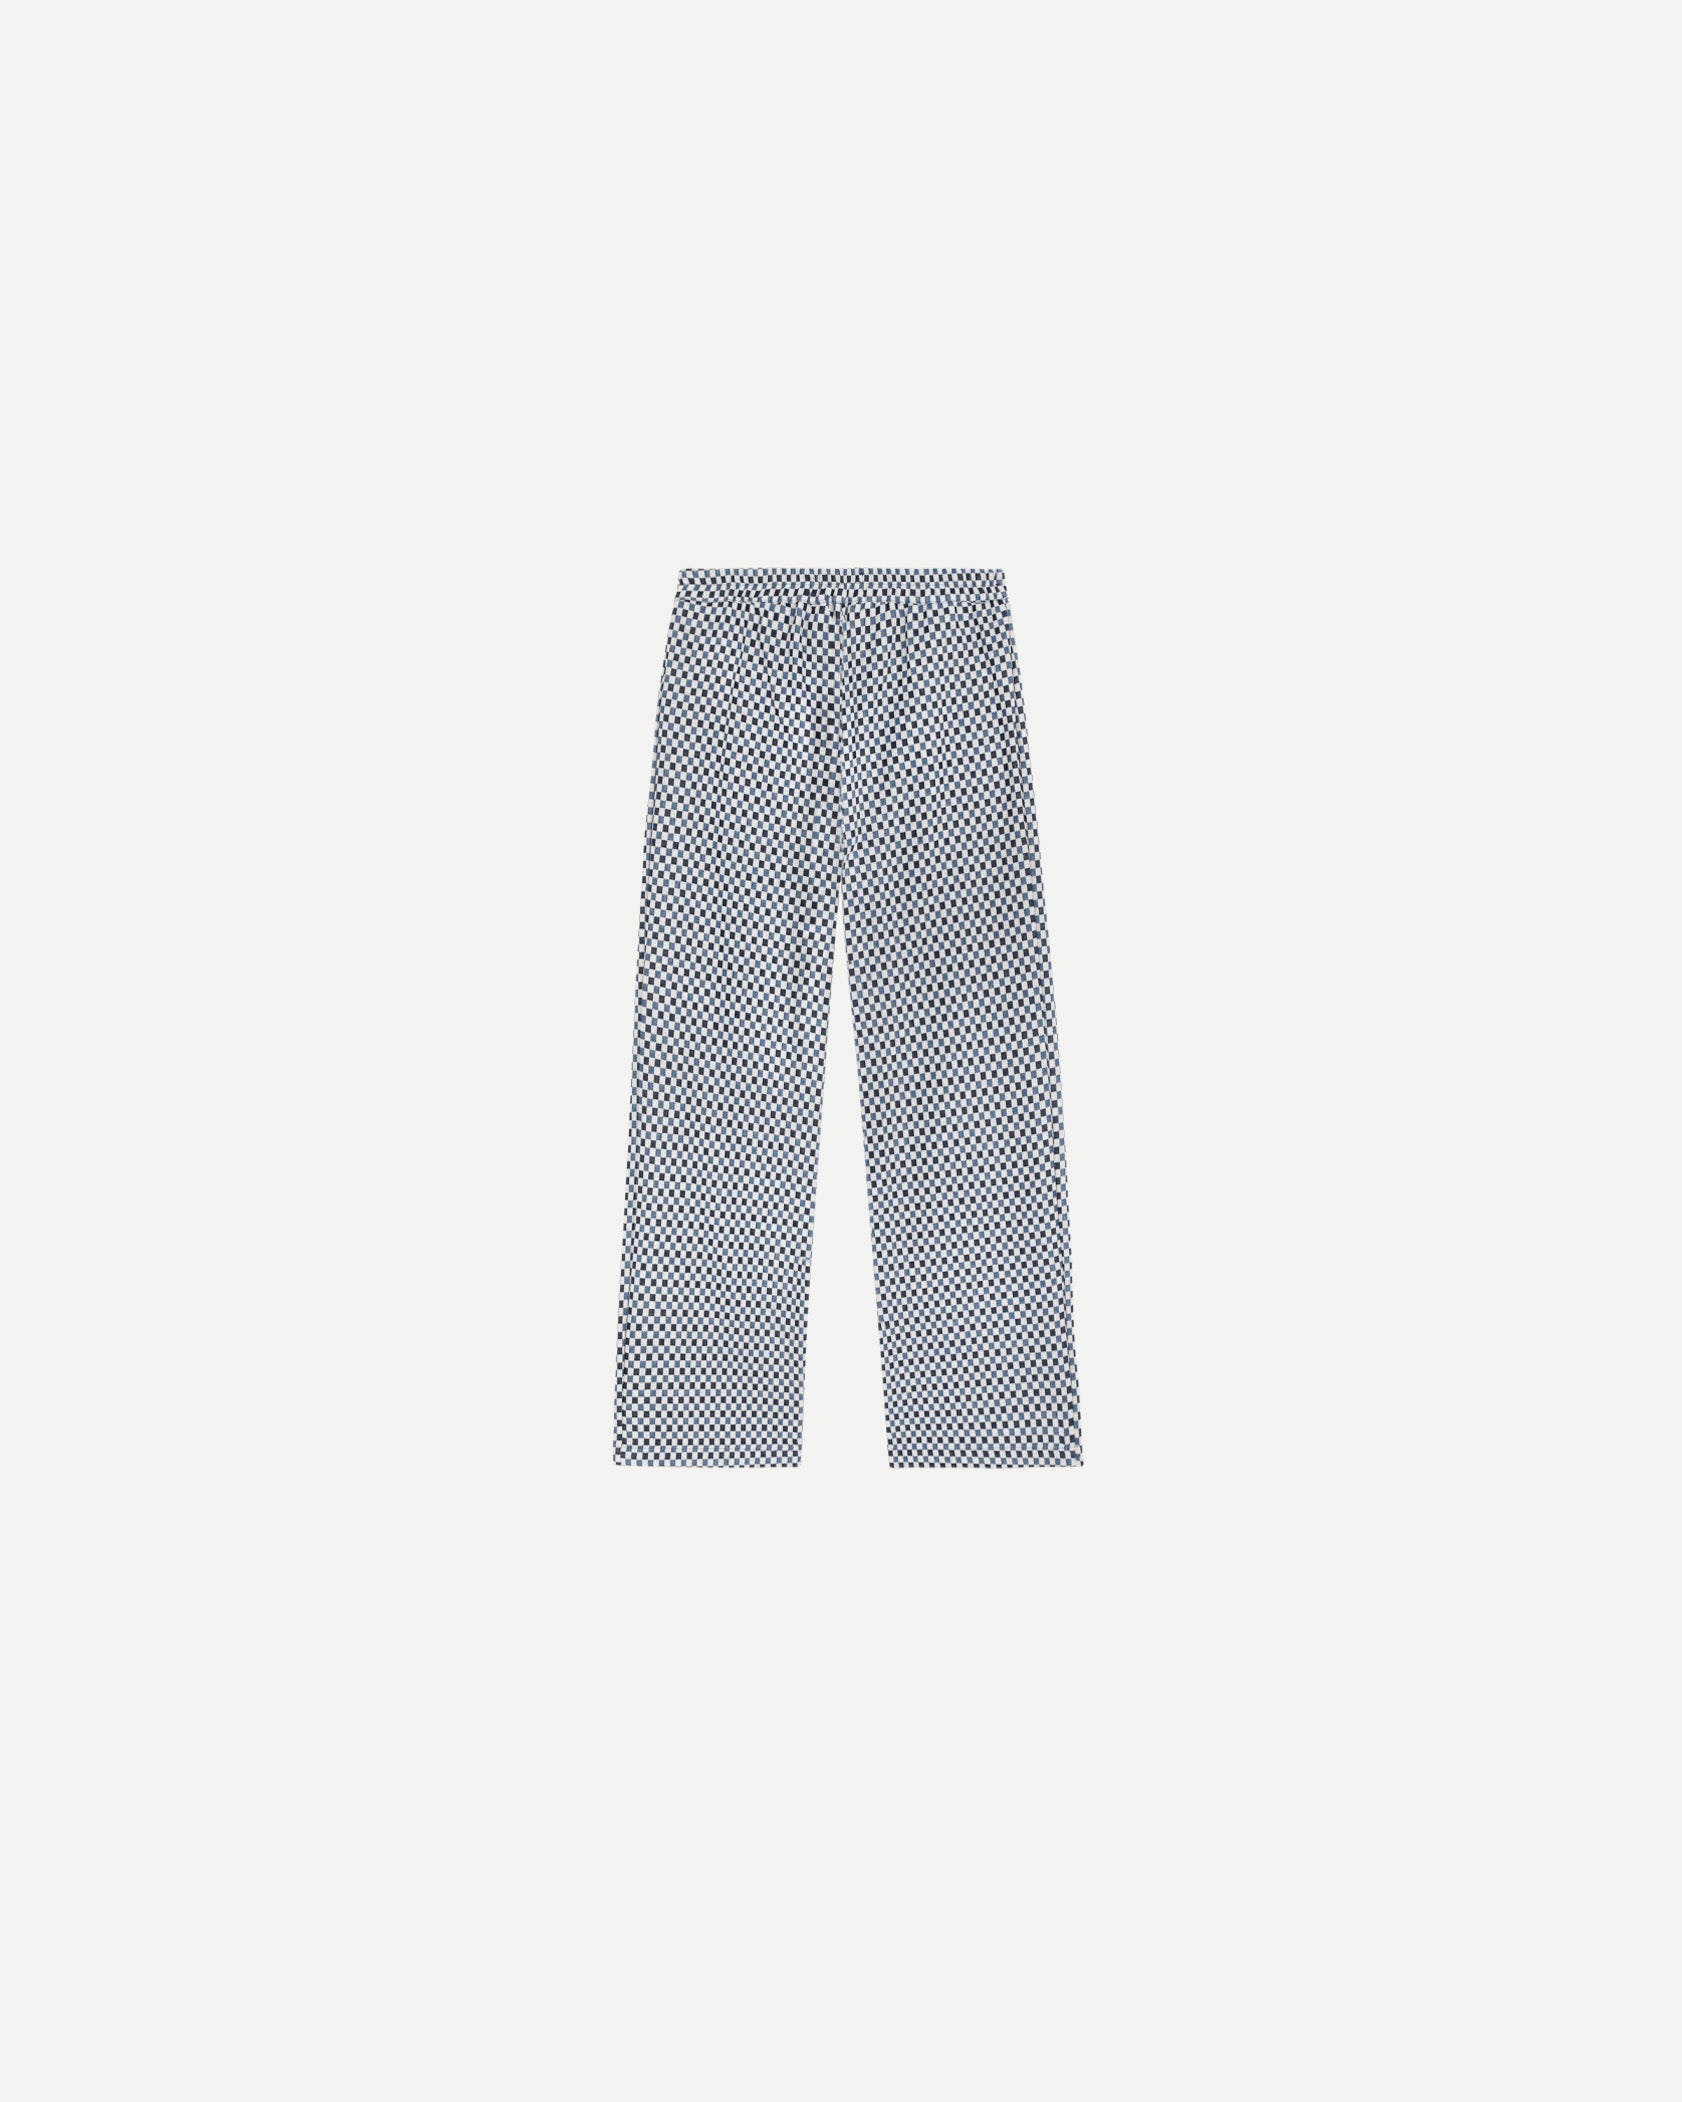 Pantalon de luxe pour homme Erevan, taille mi haute, ceinture dos élastique, coton jacquard damier, fabriqué en france